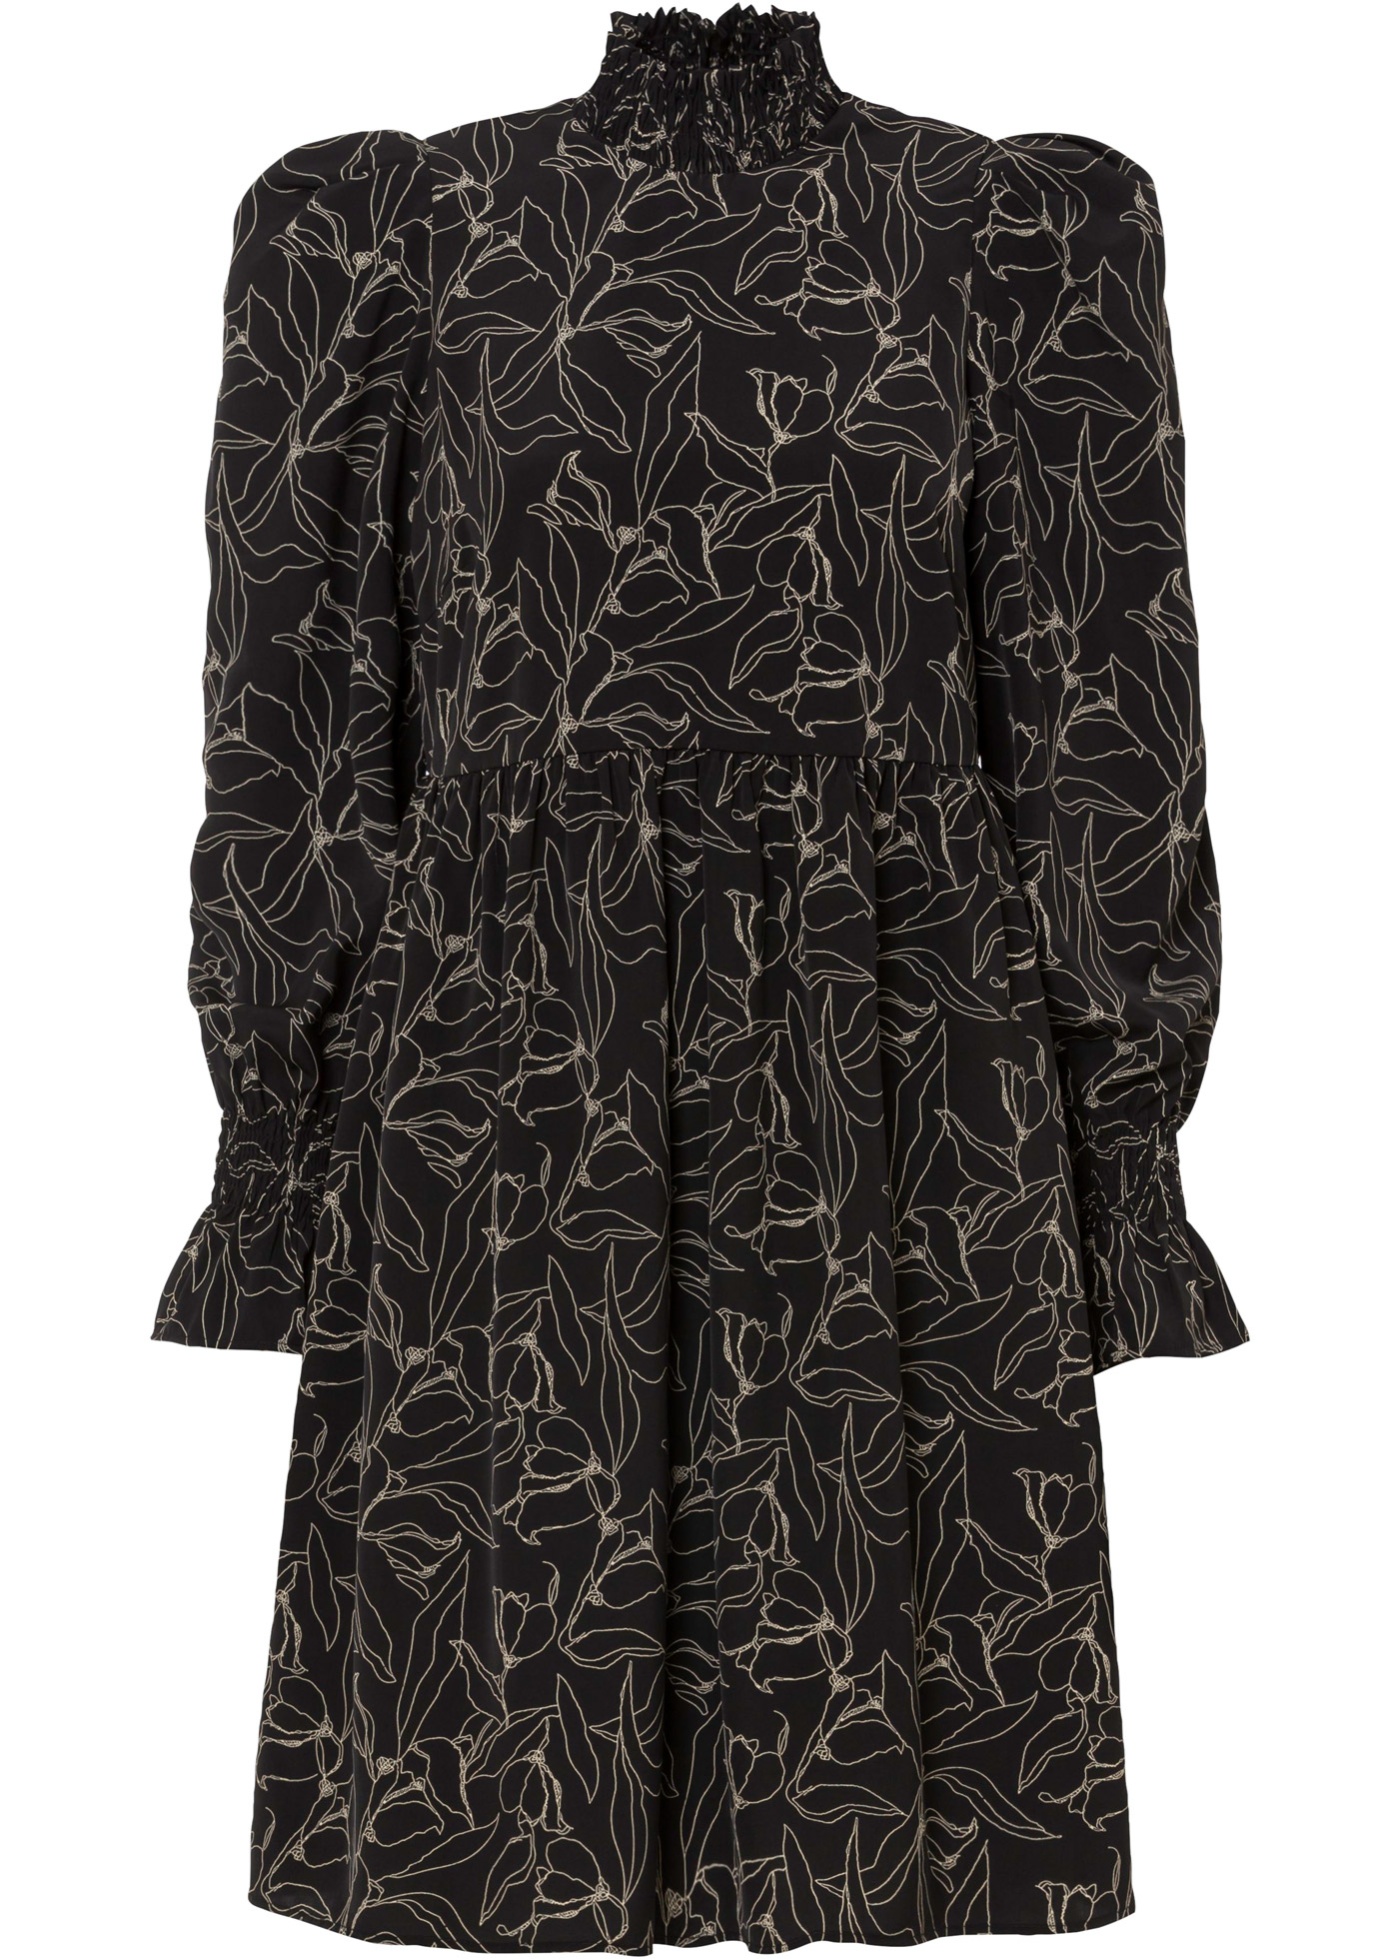 Feminines Kleid mit Smokkragen und toller Schulter-Optik. (91123495) in schwarz bedruckt